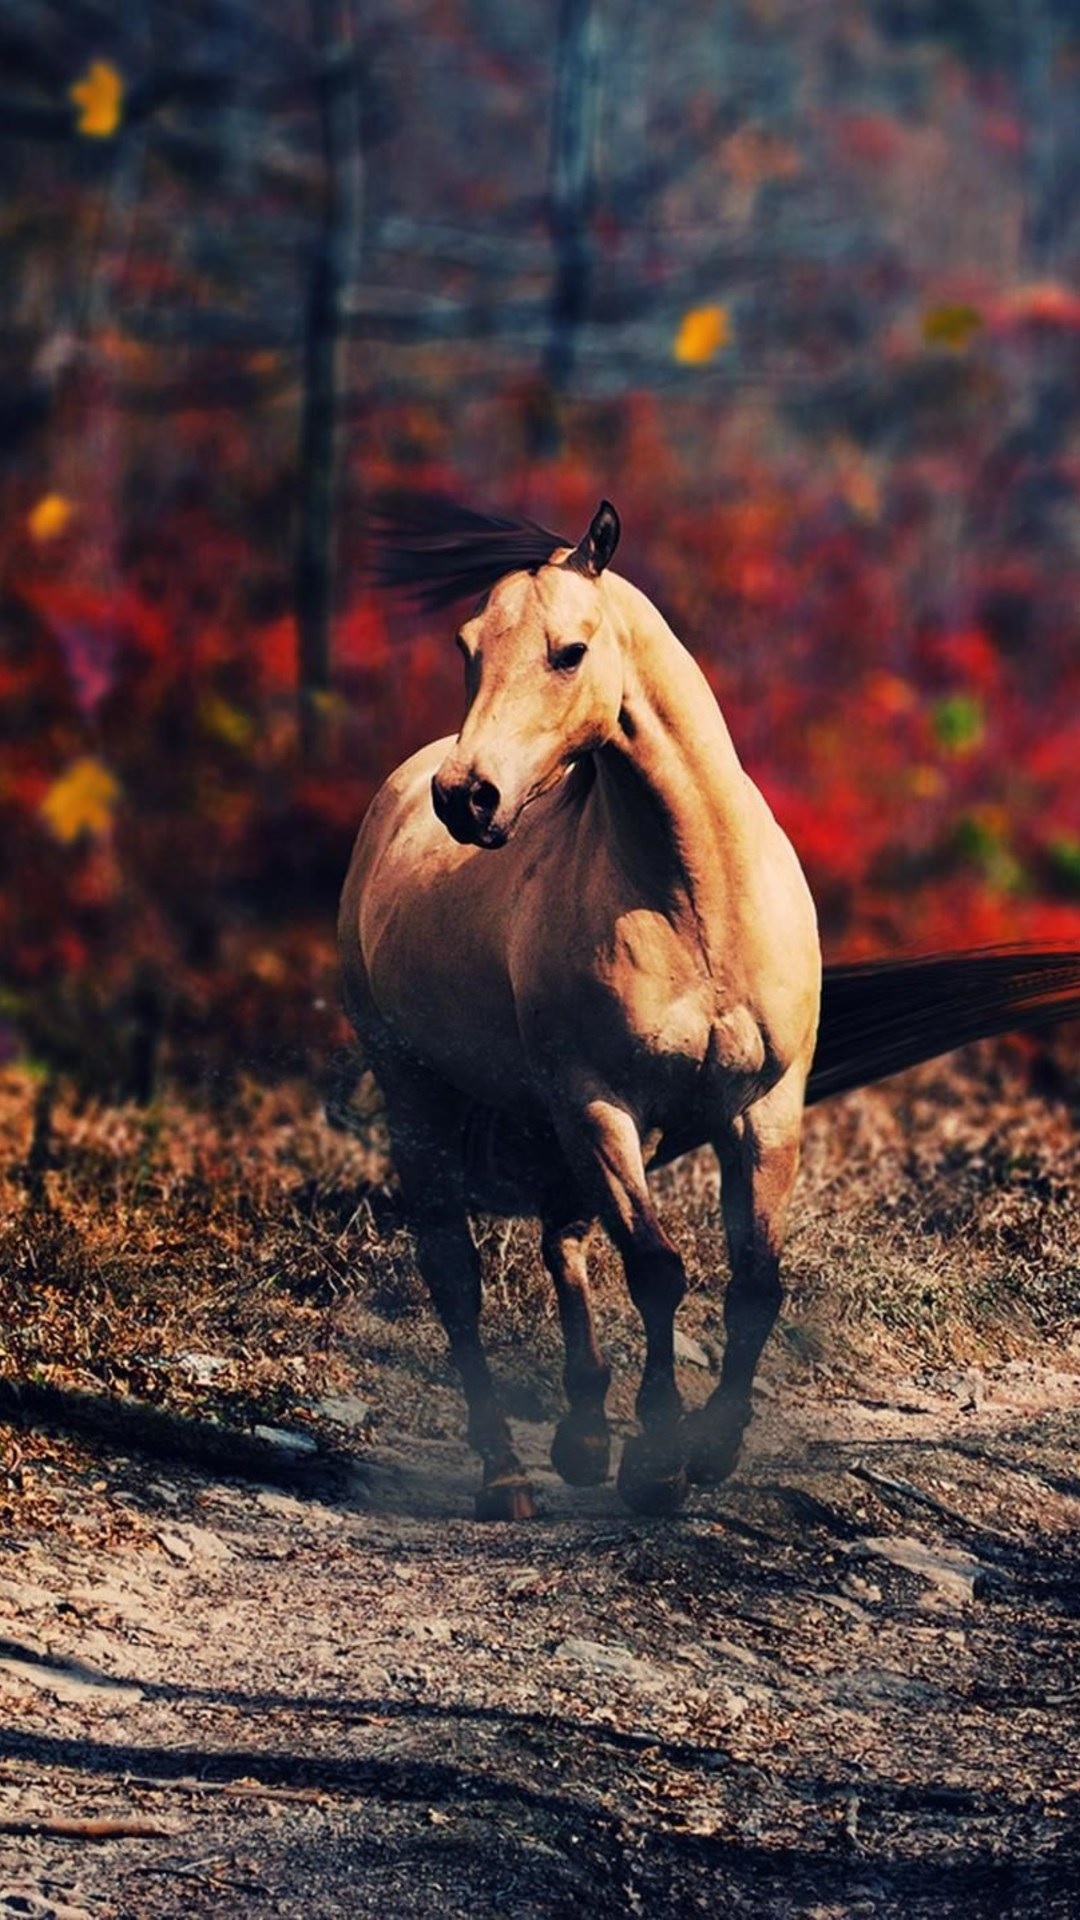 Hình nền ngựa đẹp cho iPhone